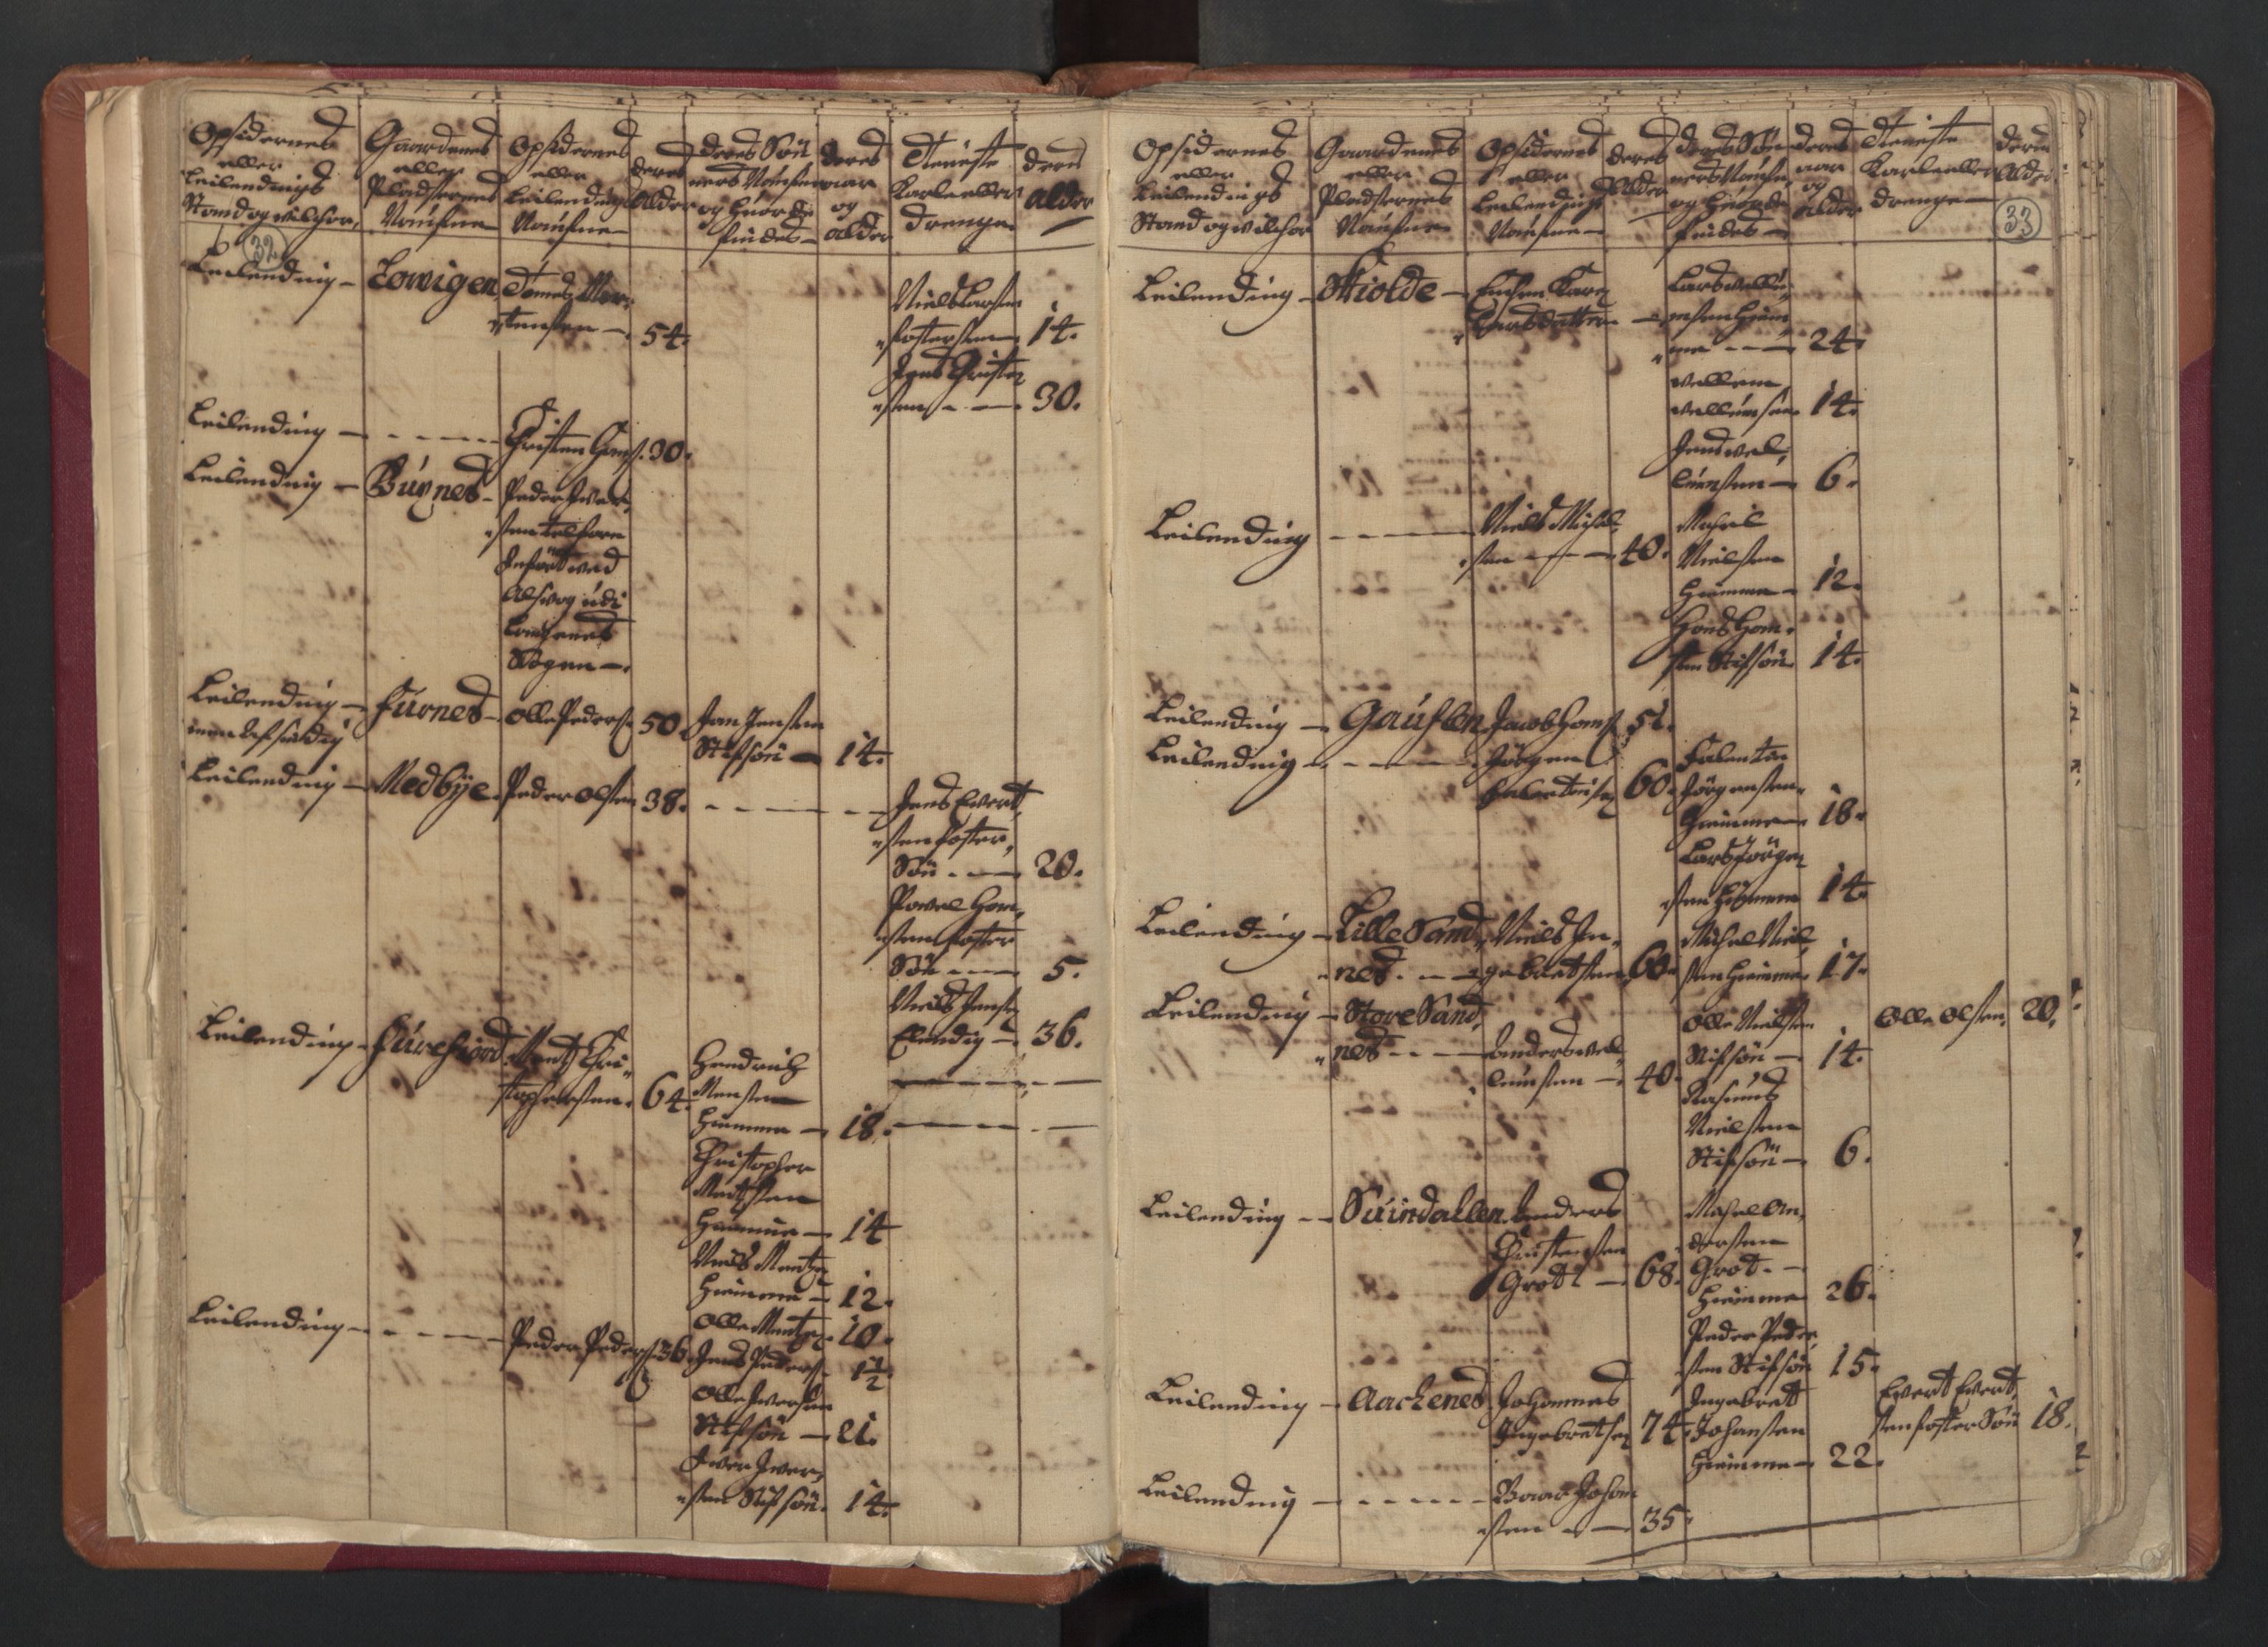 RA, Census (manntall) 1701, no. 18: Vesterålen, Andenes and Lofoten fogderi, 1701, p. 32-33